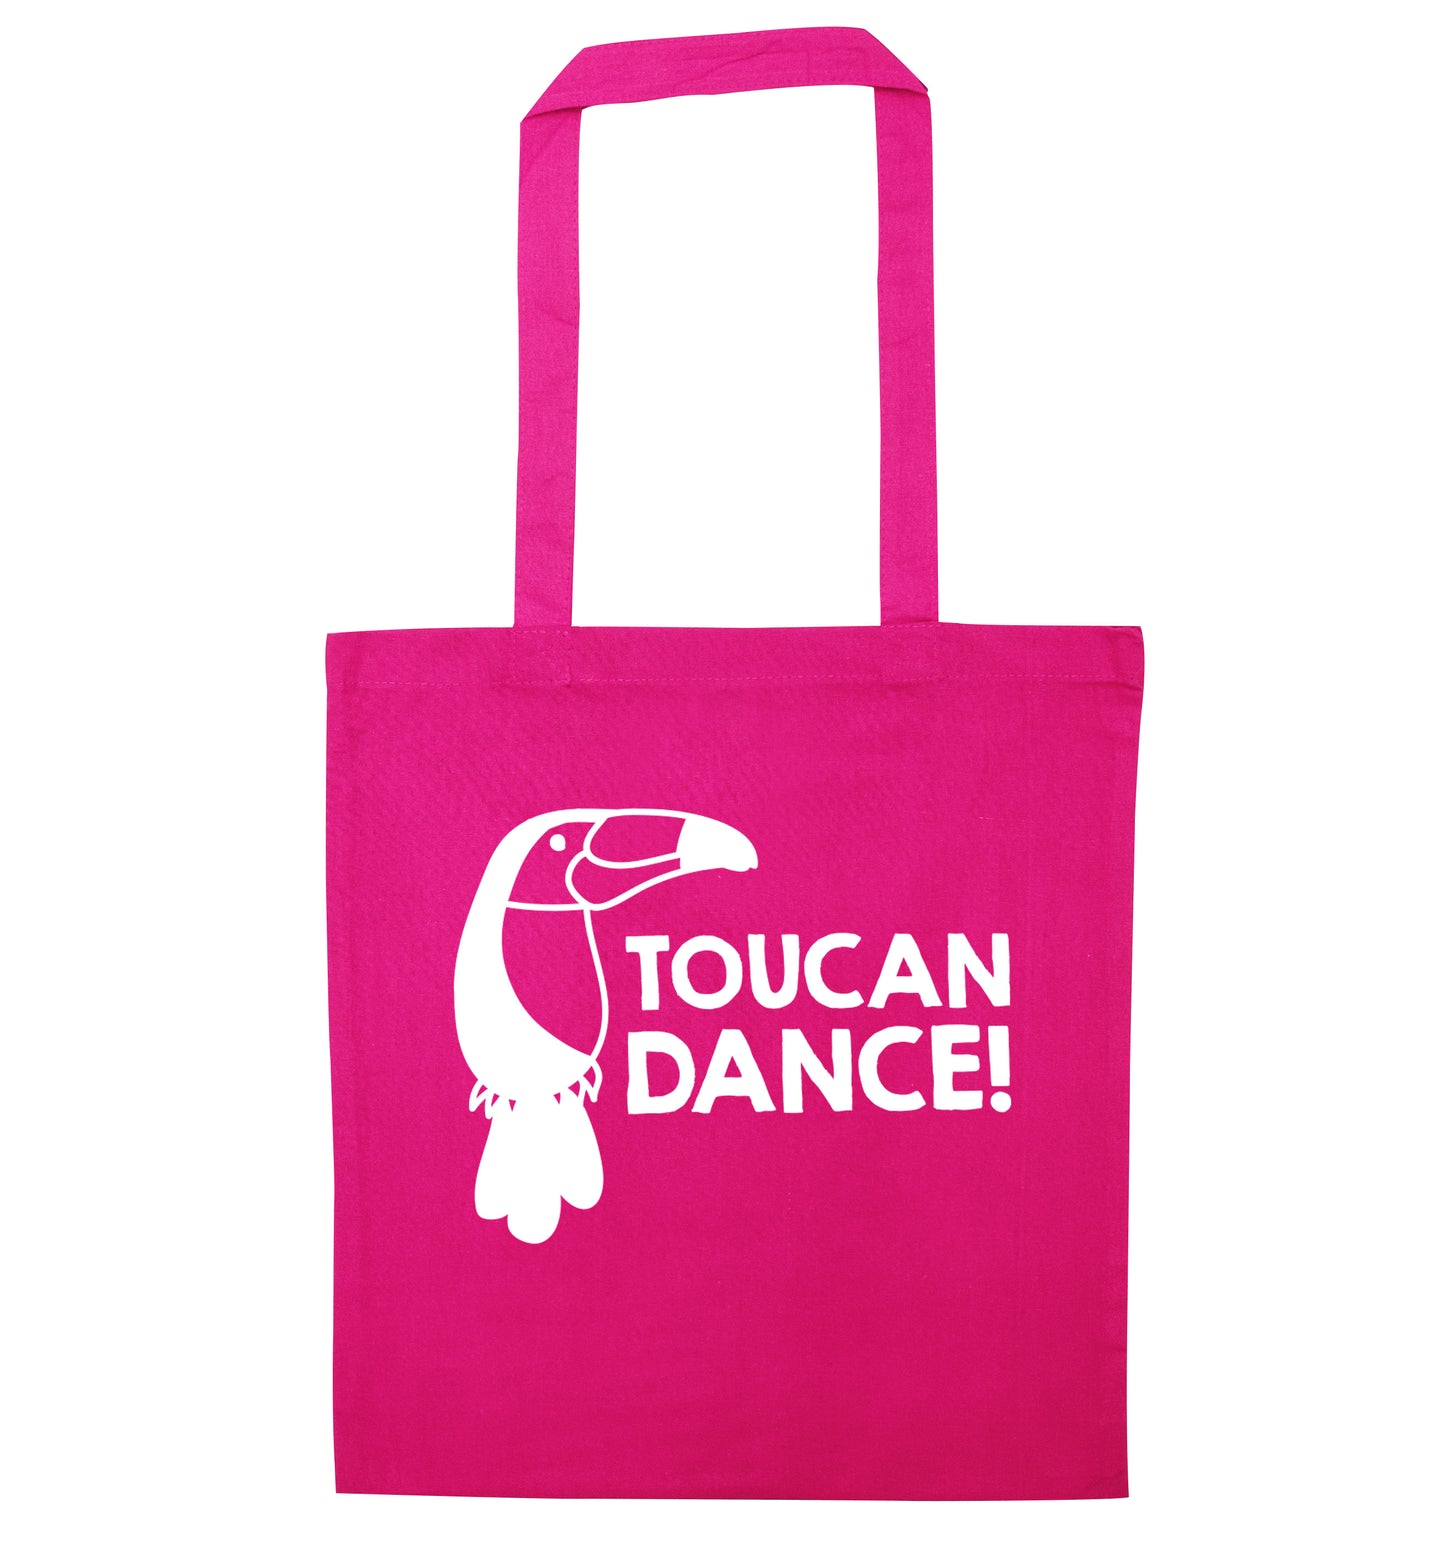 Toucan dance pink tote bag